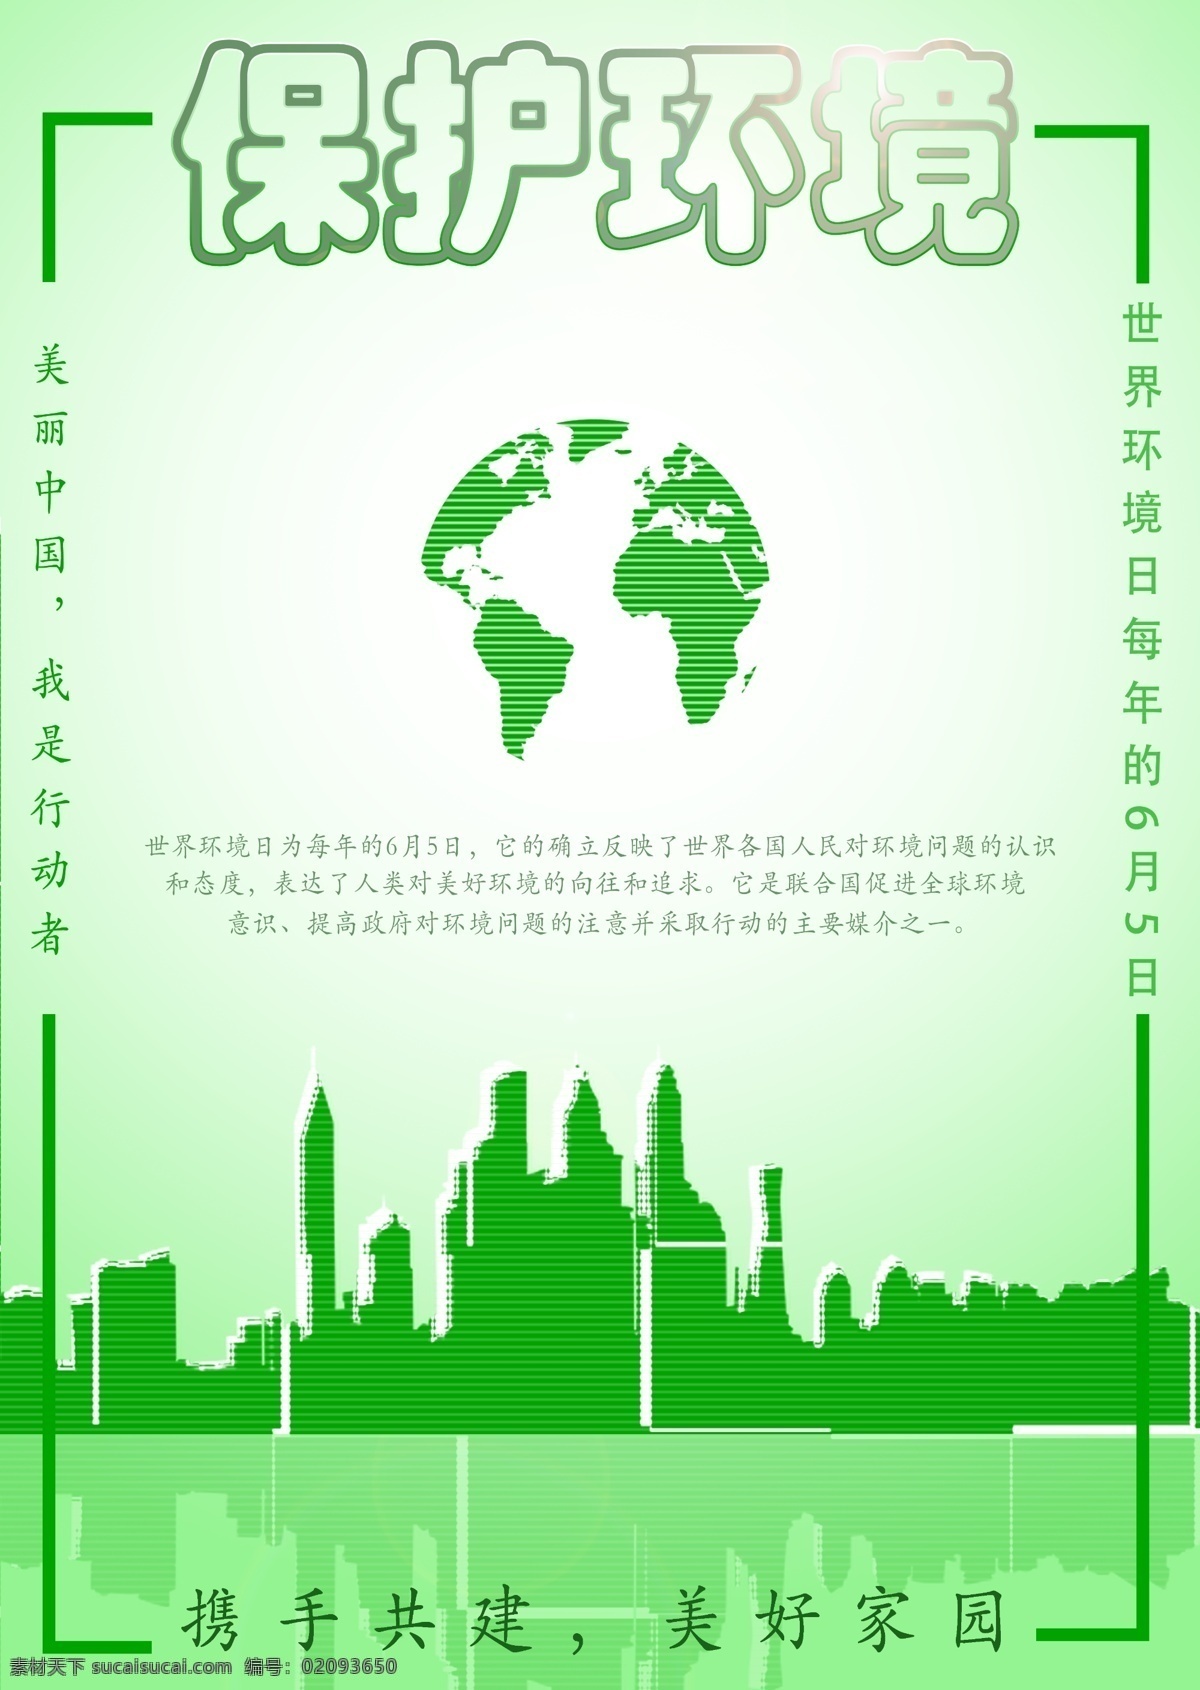 保护环境海报 保护环境 世界环保日 绿色出行 地球 城市 携手共建 美好家园 6月5日 宣传海报 环保日 环境海报 环境 保护 家园 城市剪影 图标